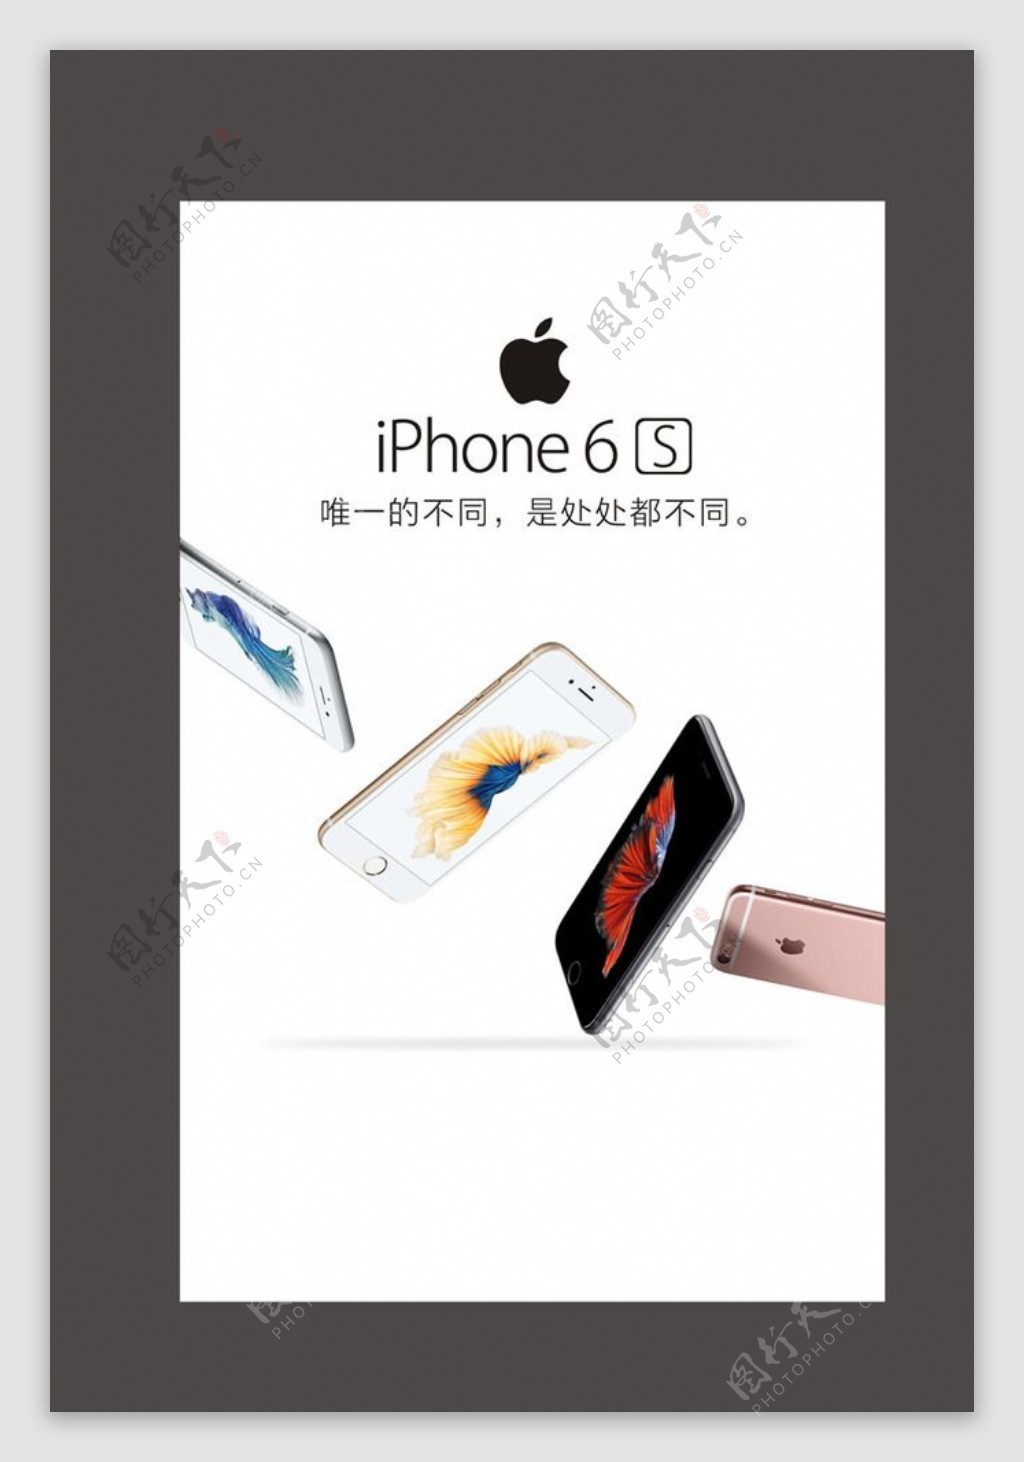 iphone6s苹果6S图片